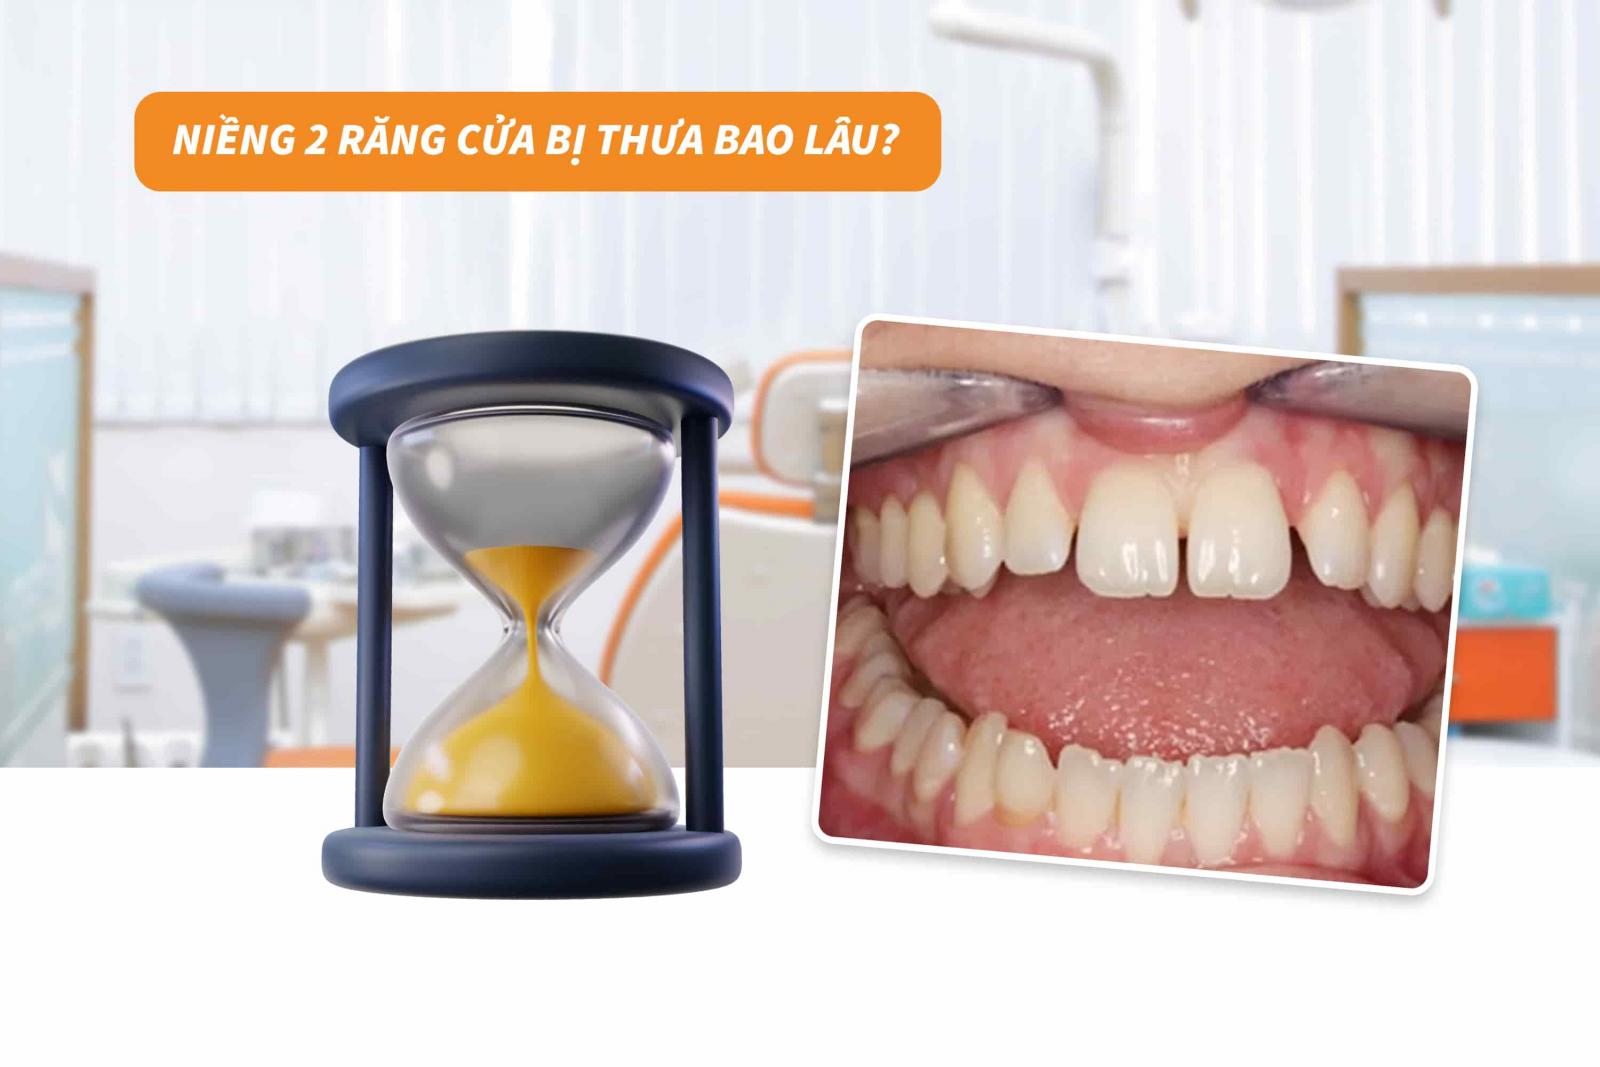 Niềng 2 răng cửa bị thưa bao lâu? 